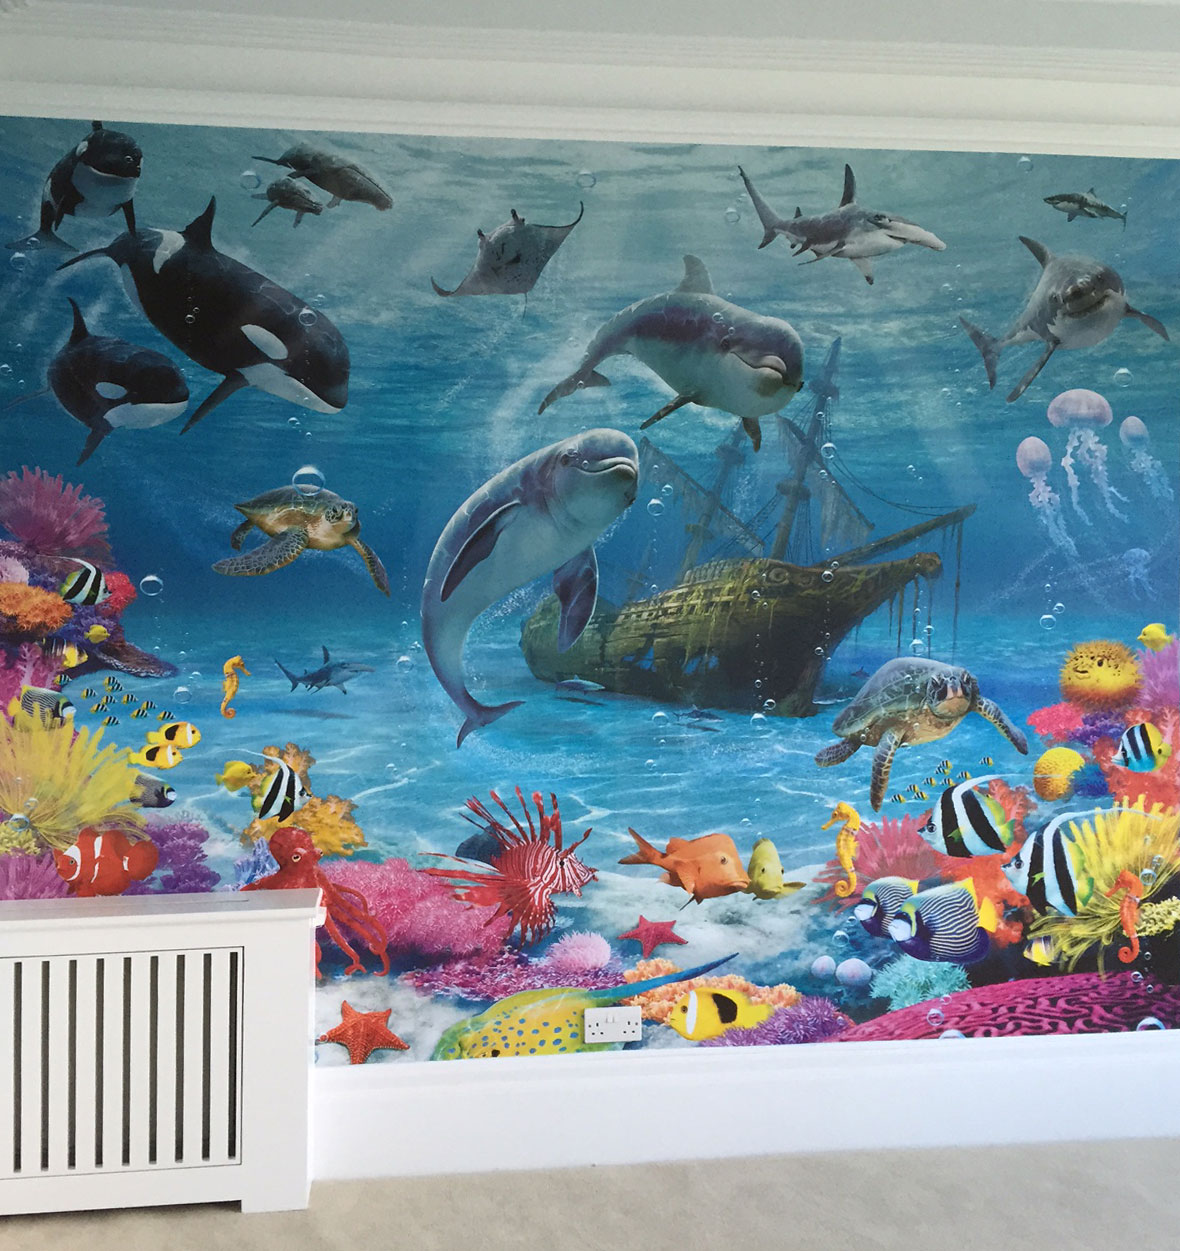 Feature wallpapering in children's bedroom